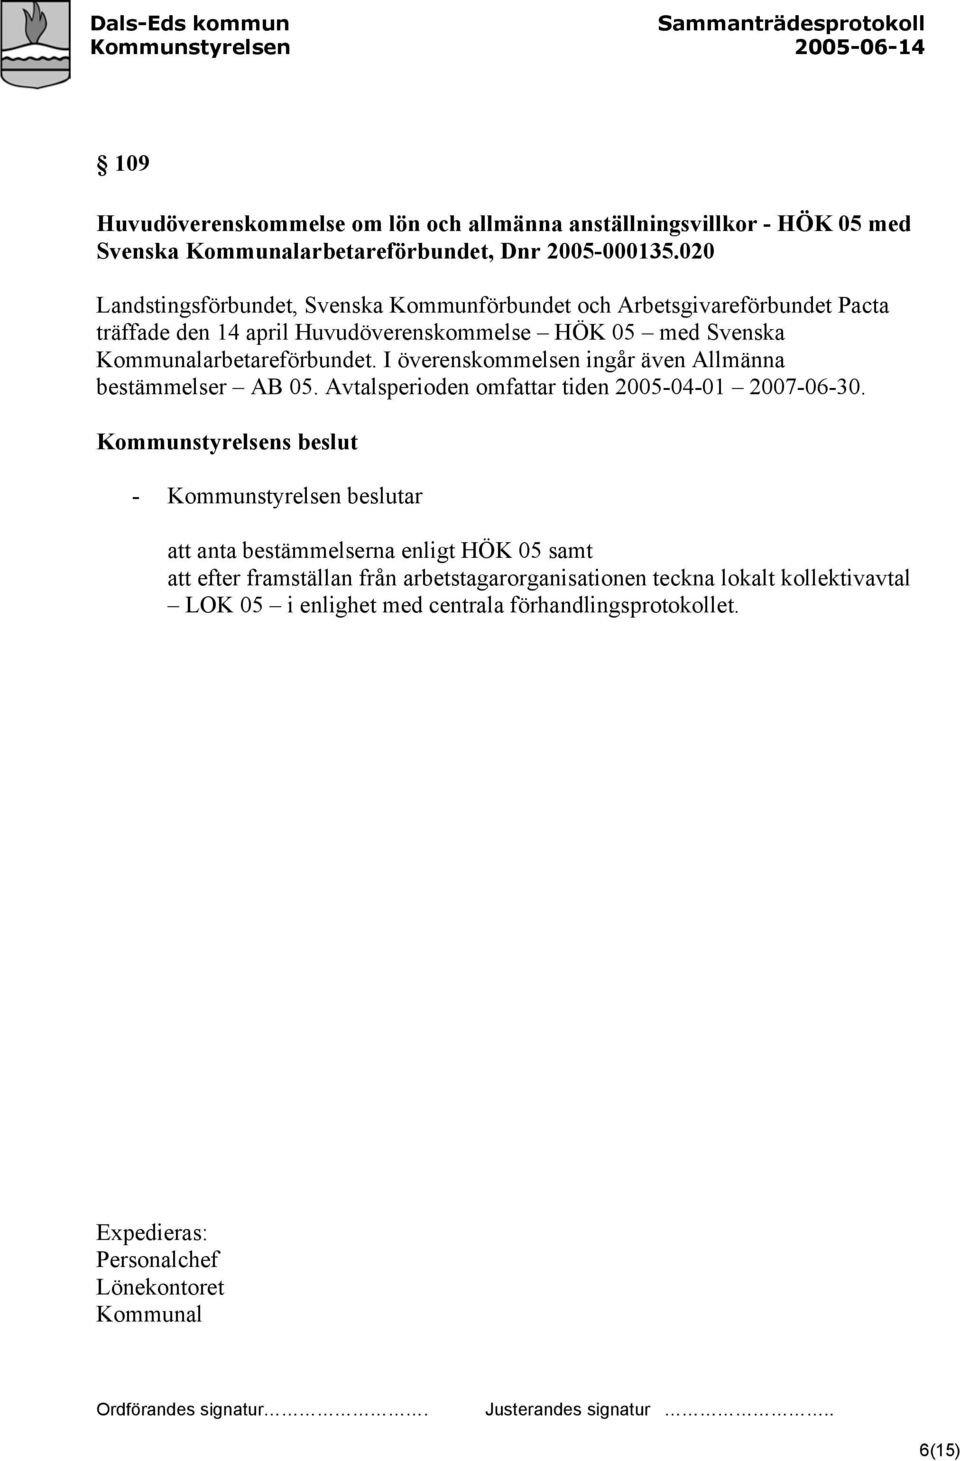 Kommunalarbetareförbundet. I överenskommelsen ingår även Allmänna bestämmelser AB 05. Avtalsperioden omfattar tiden 2005-04-01 2007-06-30.